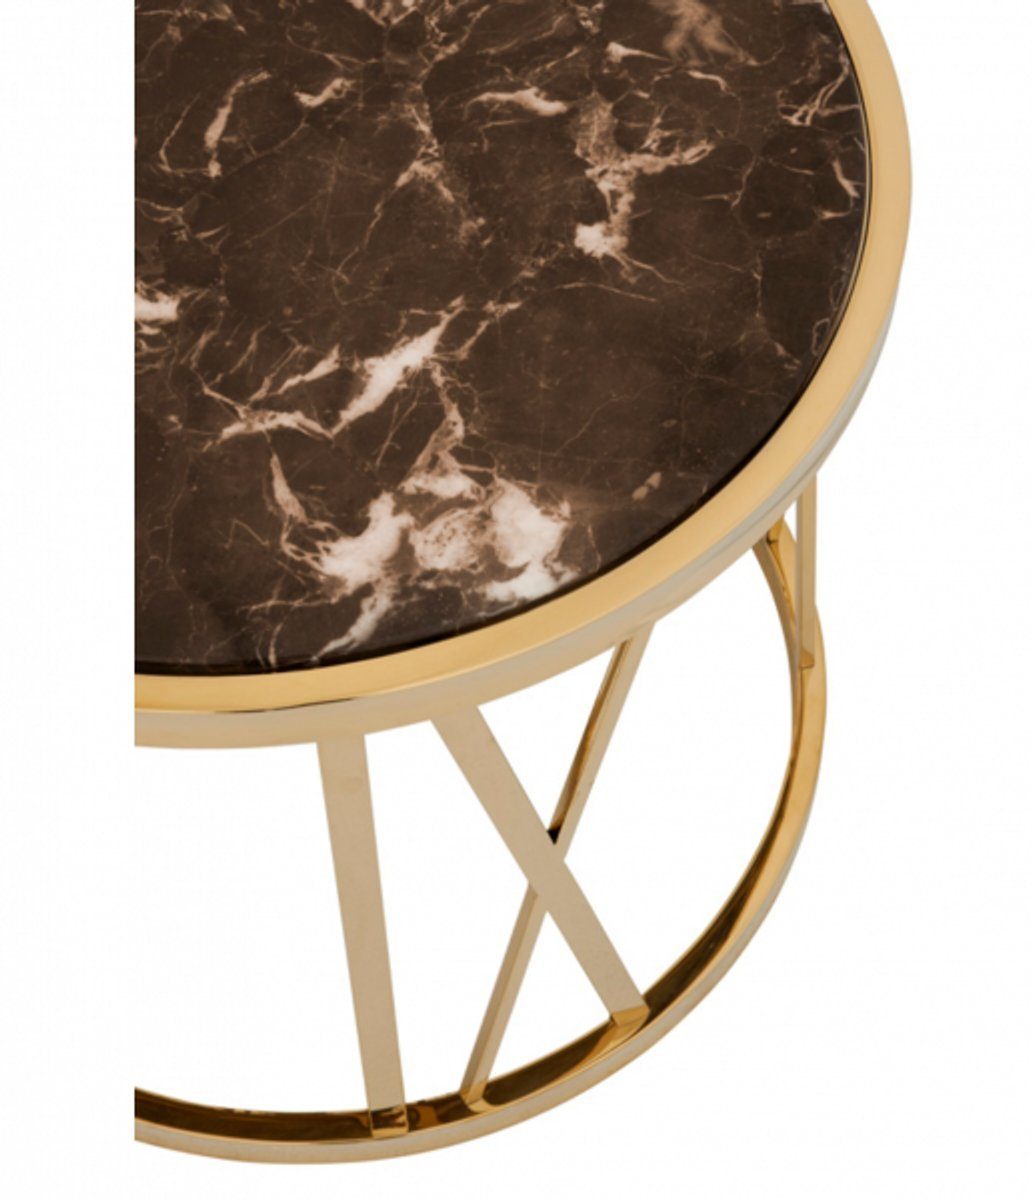 Kollektion Marmorplatte Art Beistelltisch Designer Casa Luxus Beistelltisch mit Padrino Luxus Deco - Gold brauner